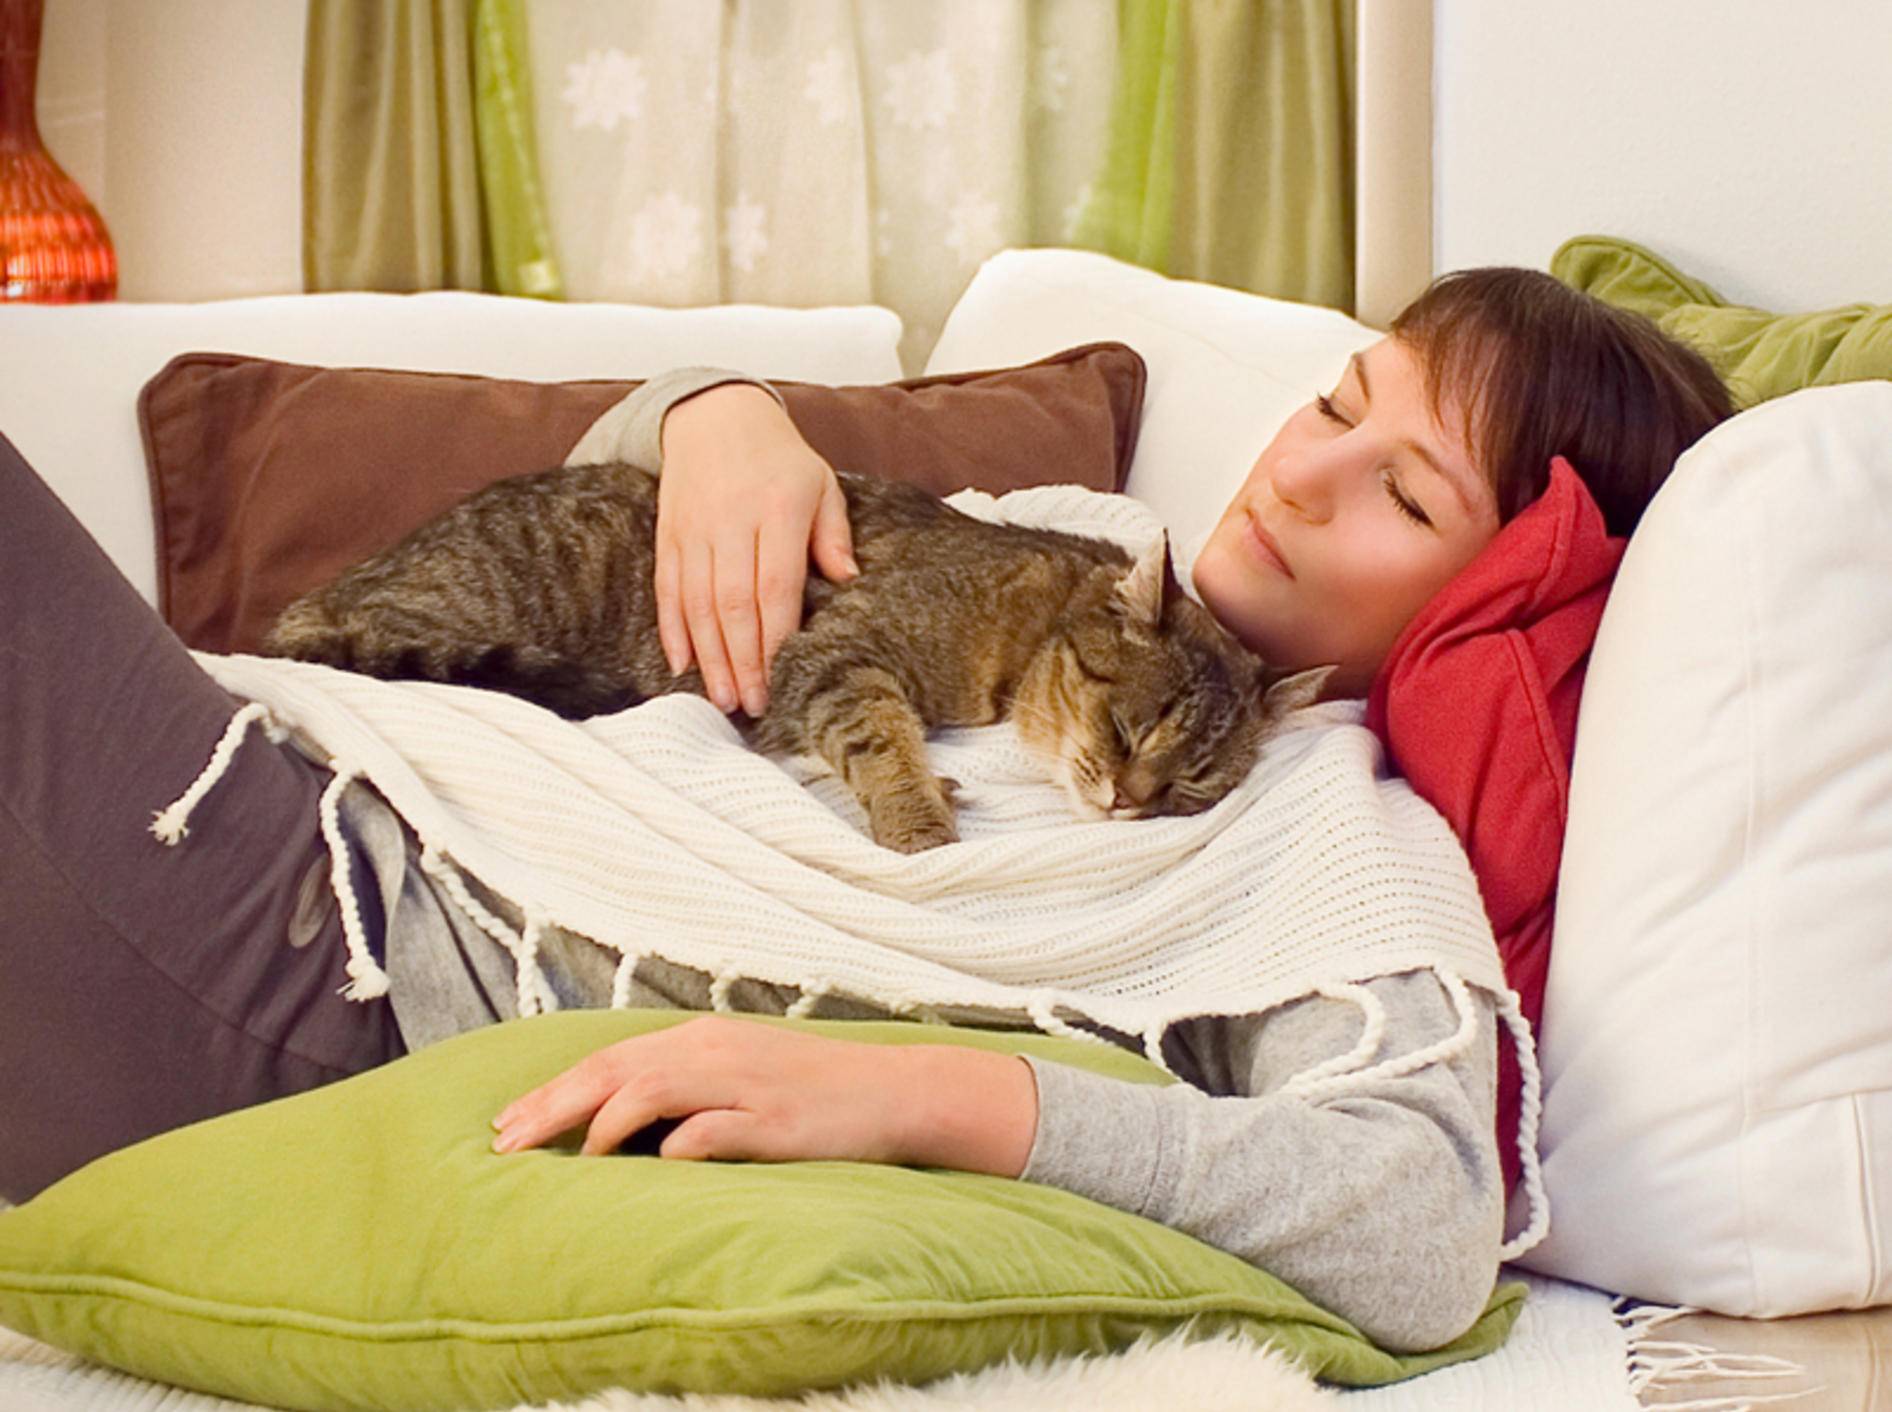 Kuscheln ist sooo schön: Diese Katze fühlt sich wohl und geborgen bei ihrem Lieblingsmensch – Shutterstock / Patrizia Tilly